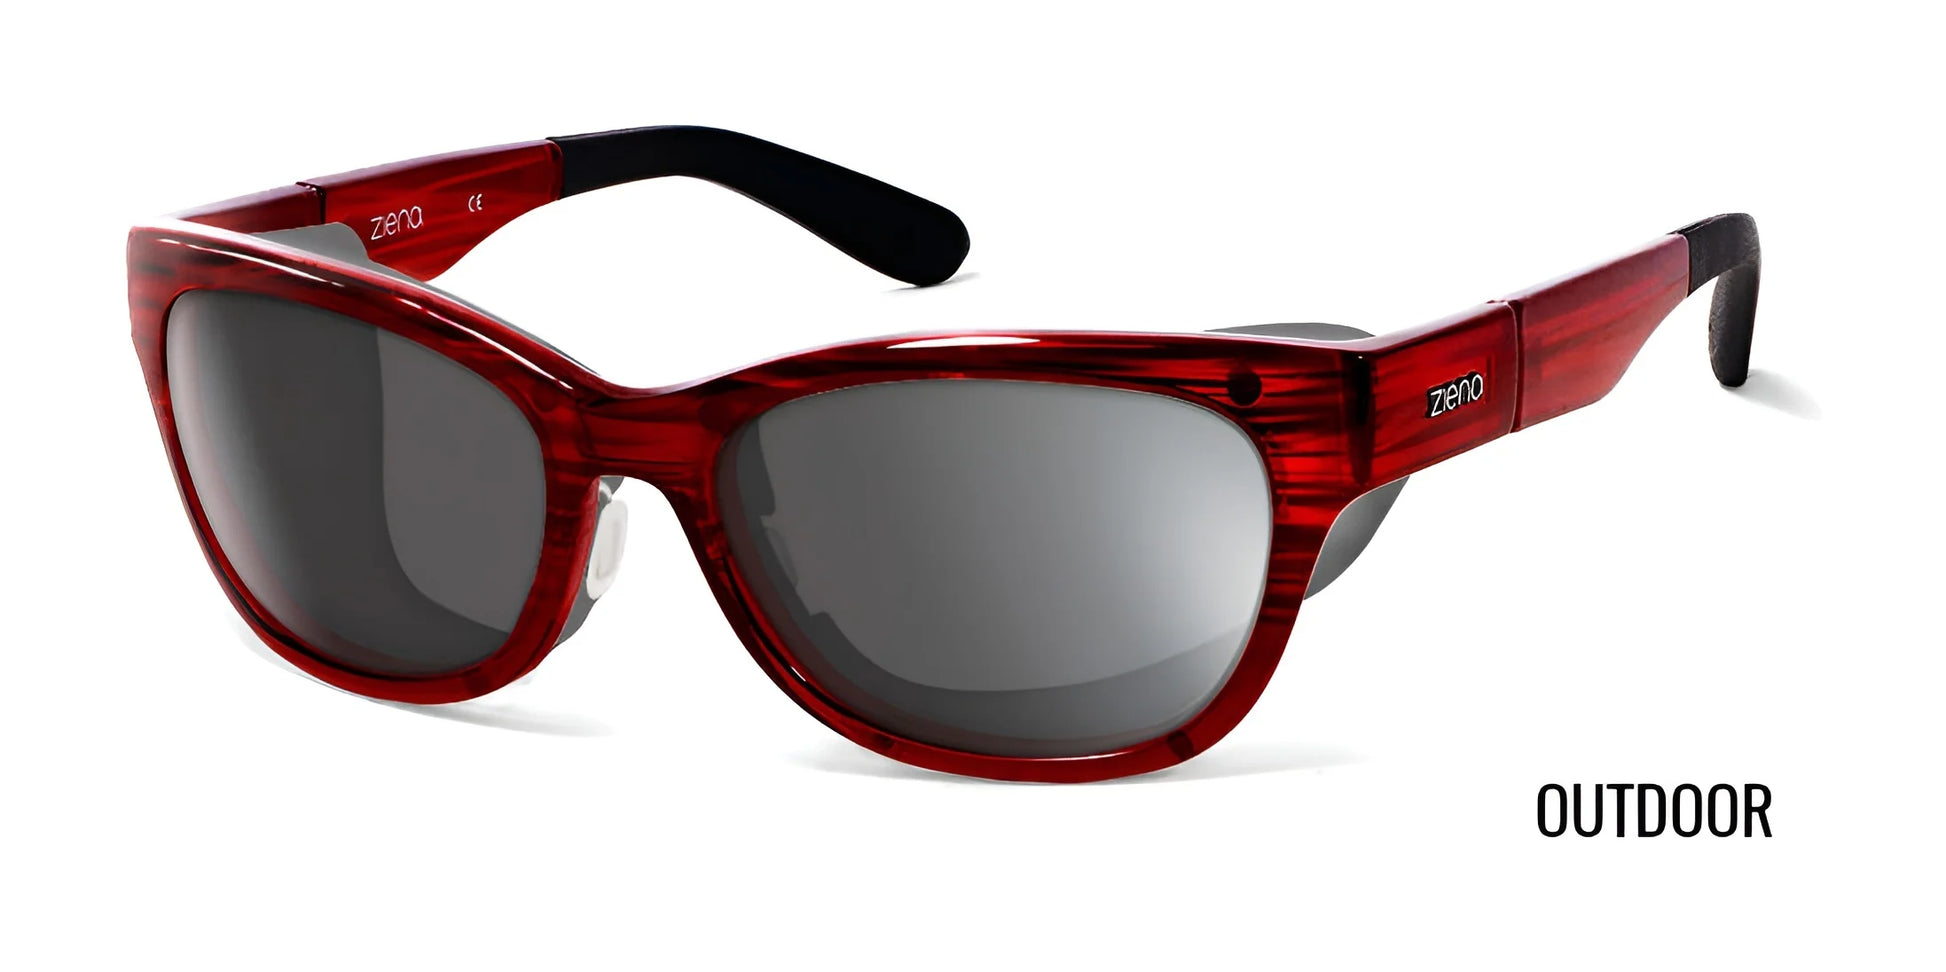 Ziena Marina Sunglasses Merlot / DARKshift™ Photochromic - Clr to DARK Gray / Black